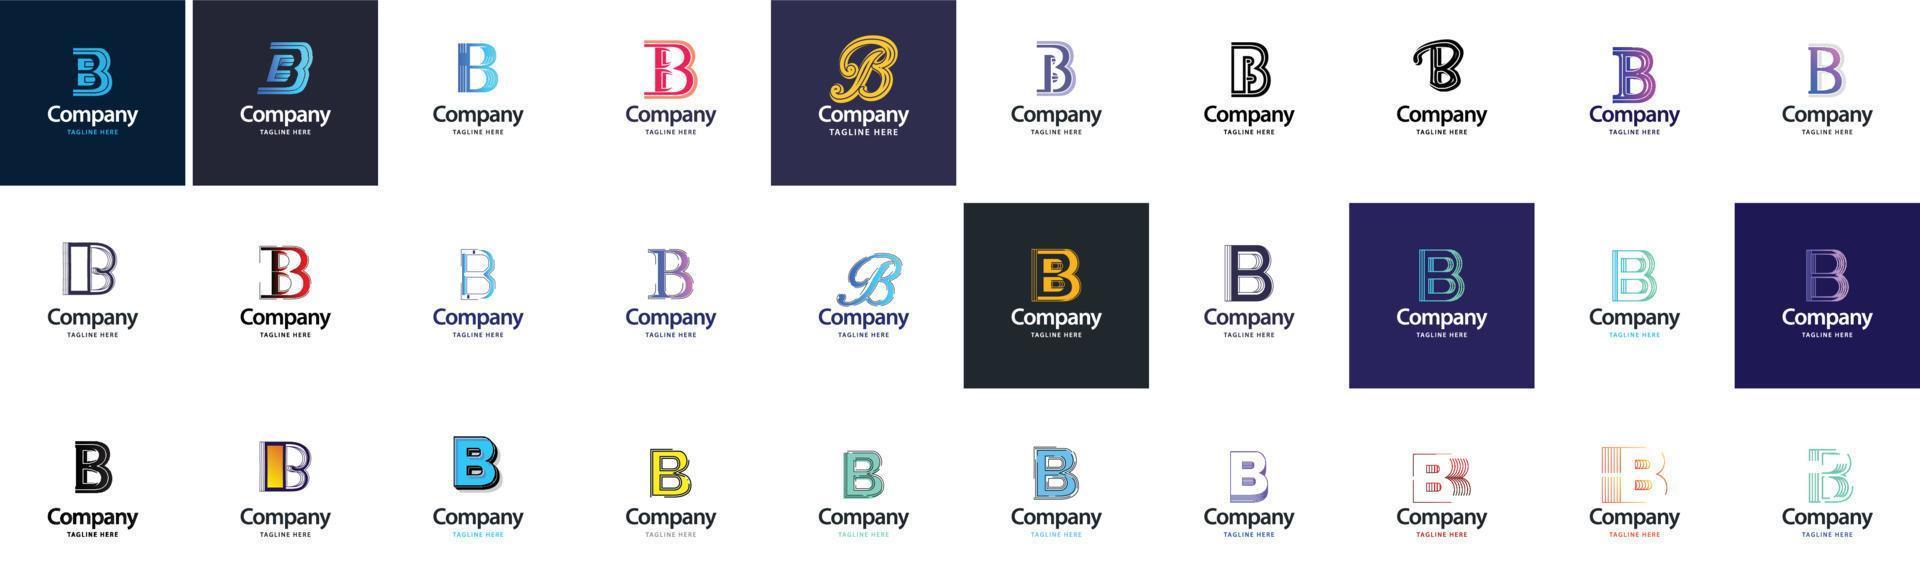 b-Logo-Sammlung. 30 Business-Logo-Sammlung für Finanzunternehmen oder Designagenturen. vektormarkenillustration vektor